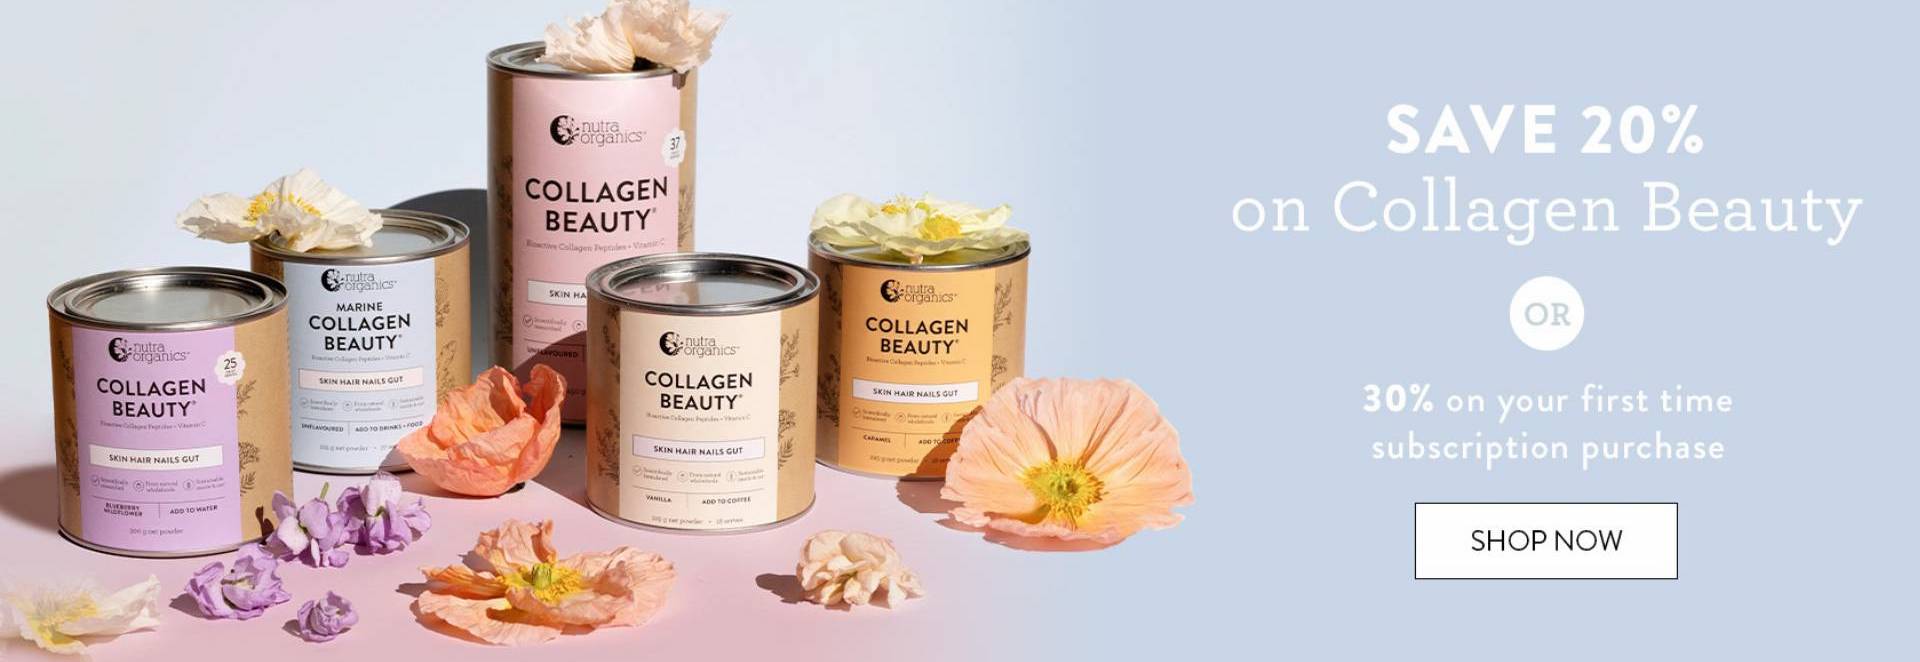 Collagen beauty sale 